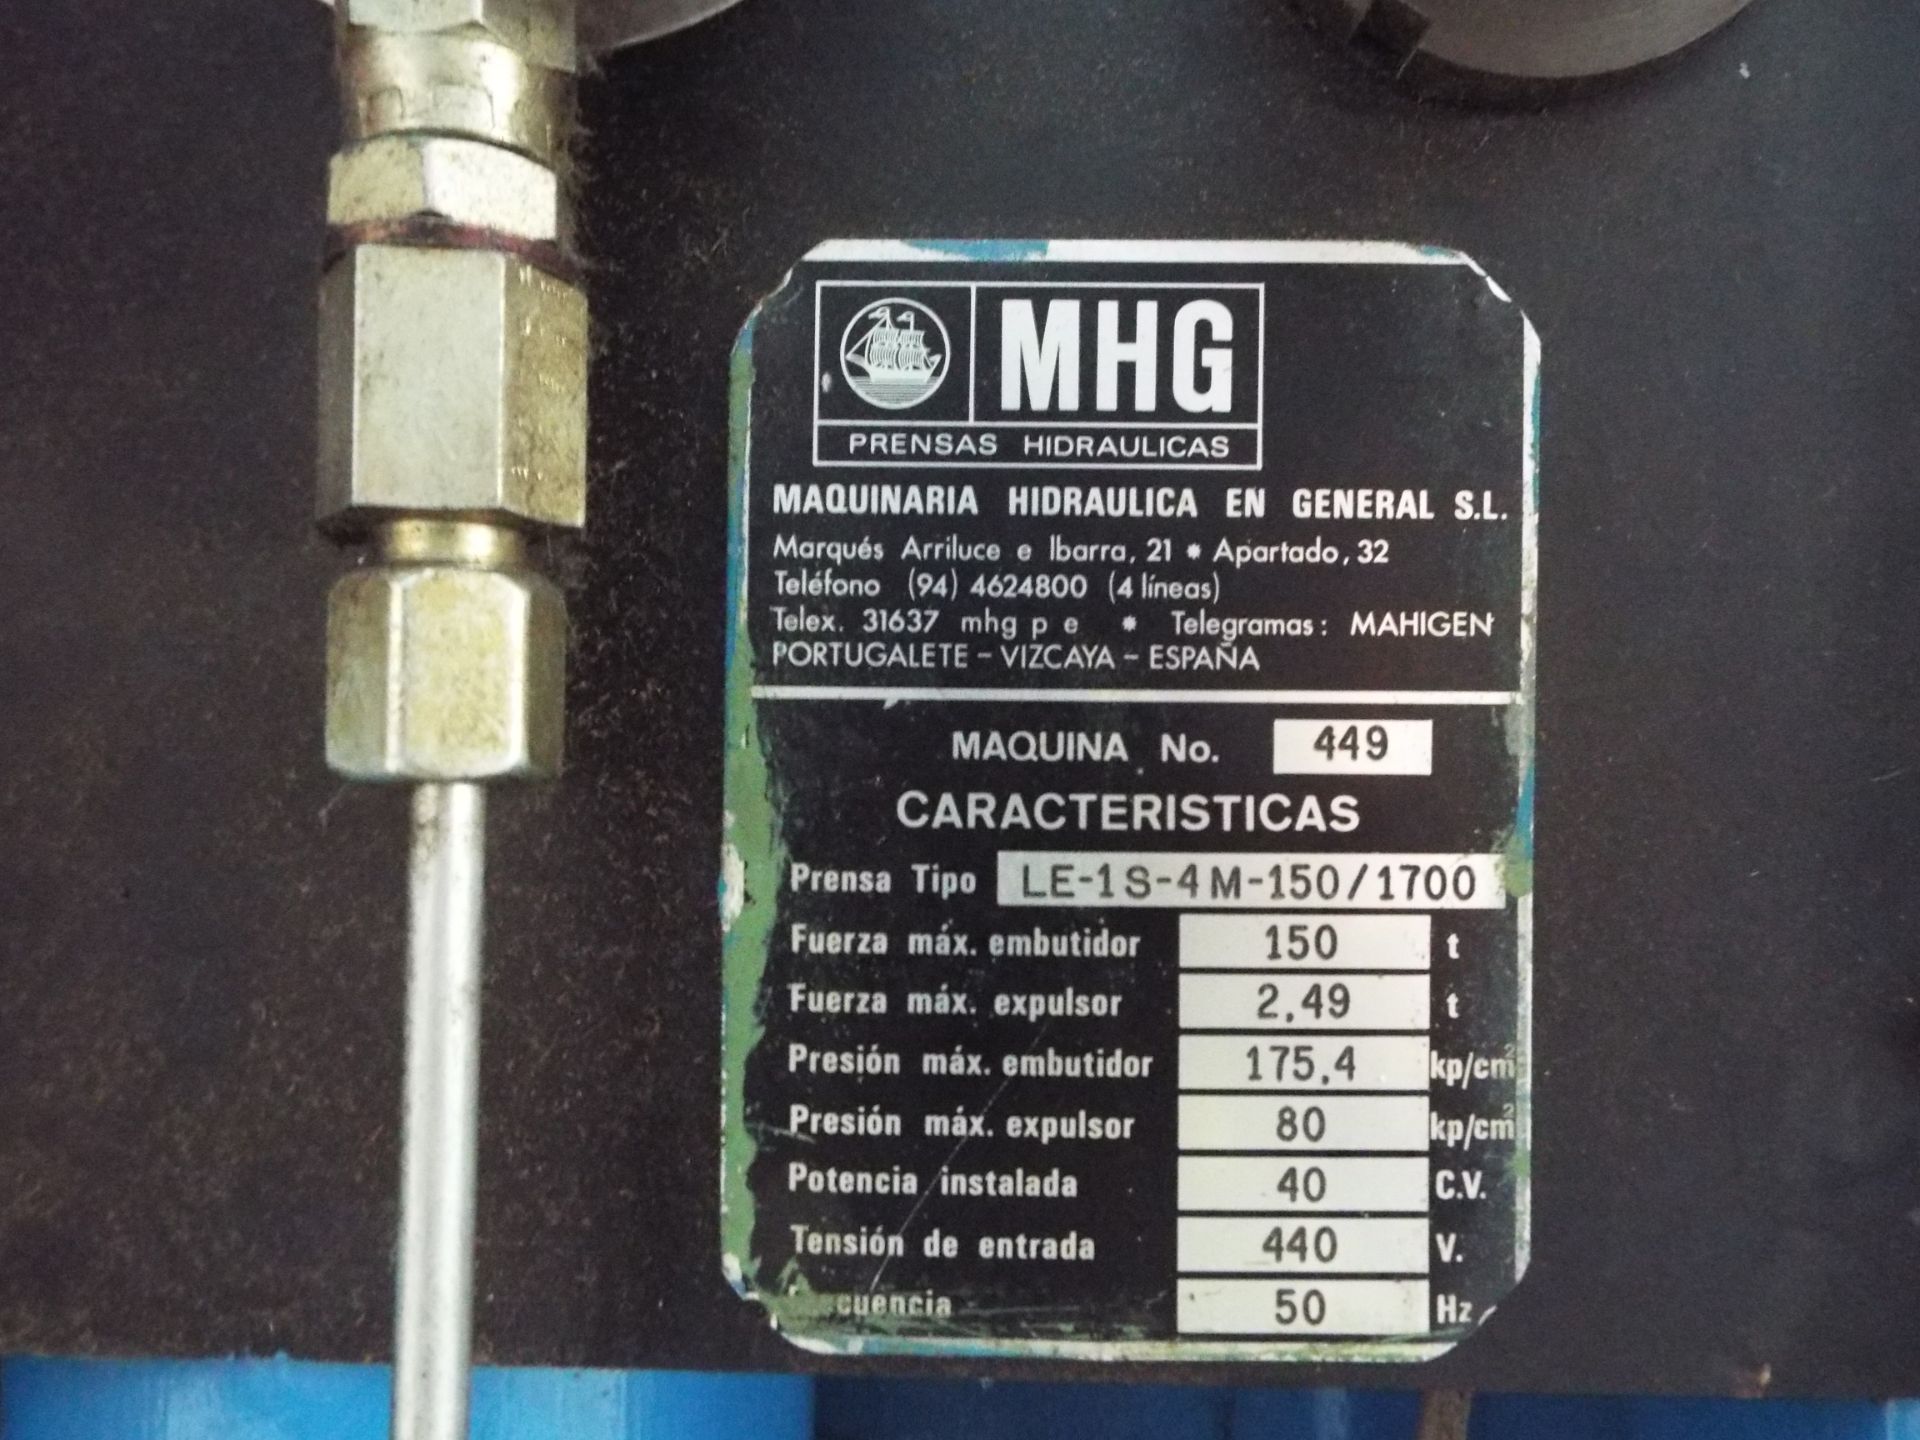 MHG 150Tonne (Maquinaria Hidraulica en General) Hot Compression Moulding Press - Image 4 of 49